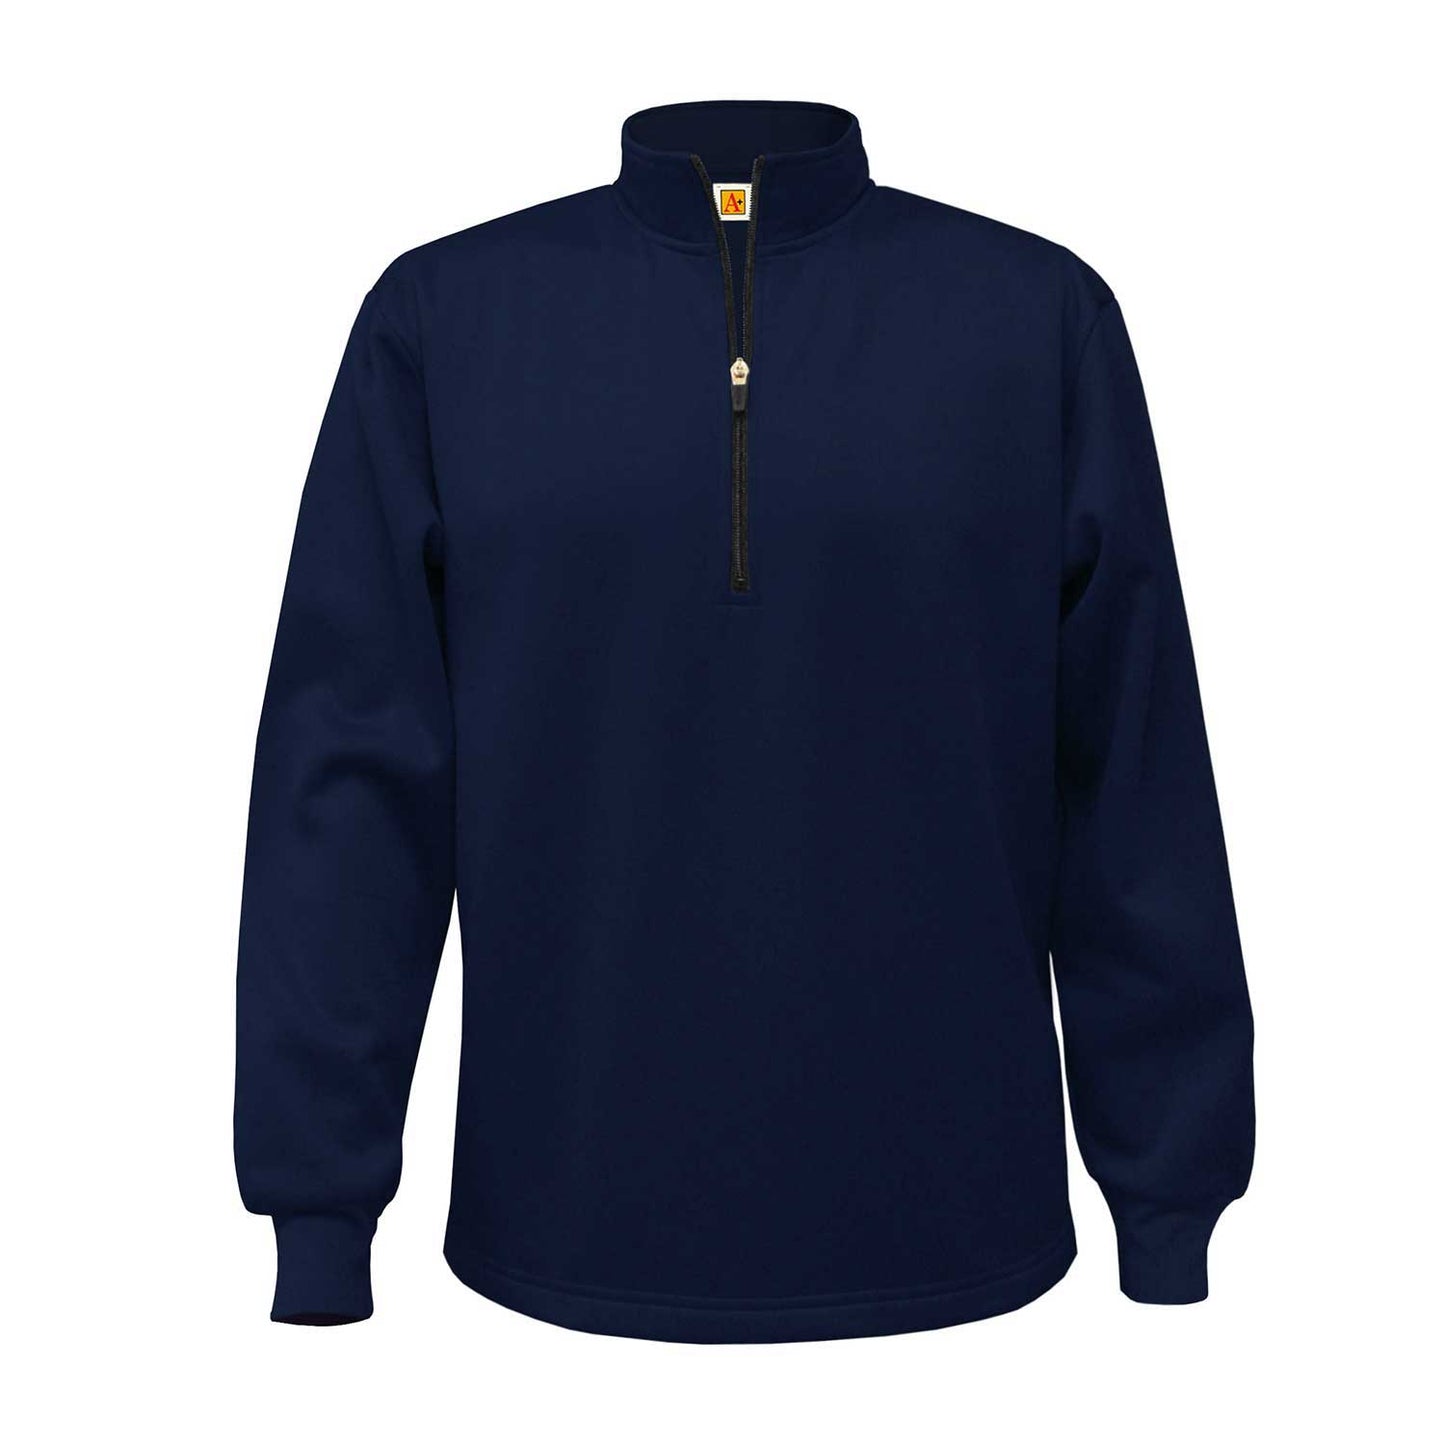 Notre Dame 1/2 Zip Microfiber Sweatshirt-Navy by Elderwear